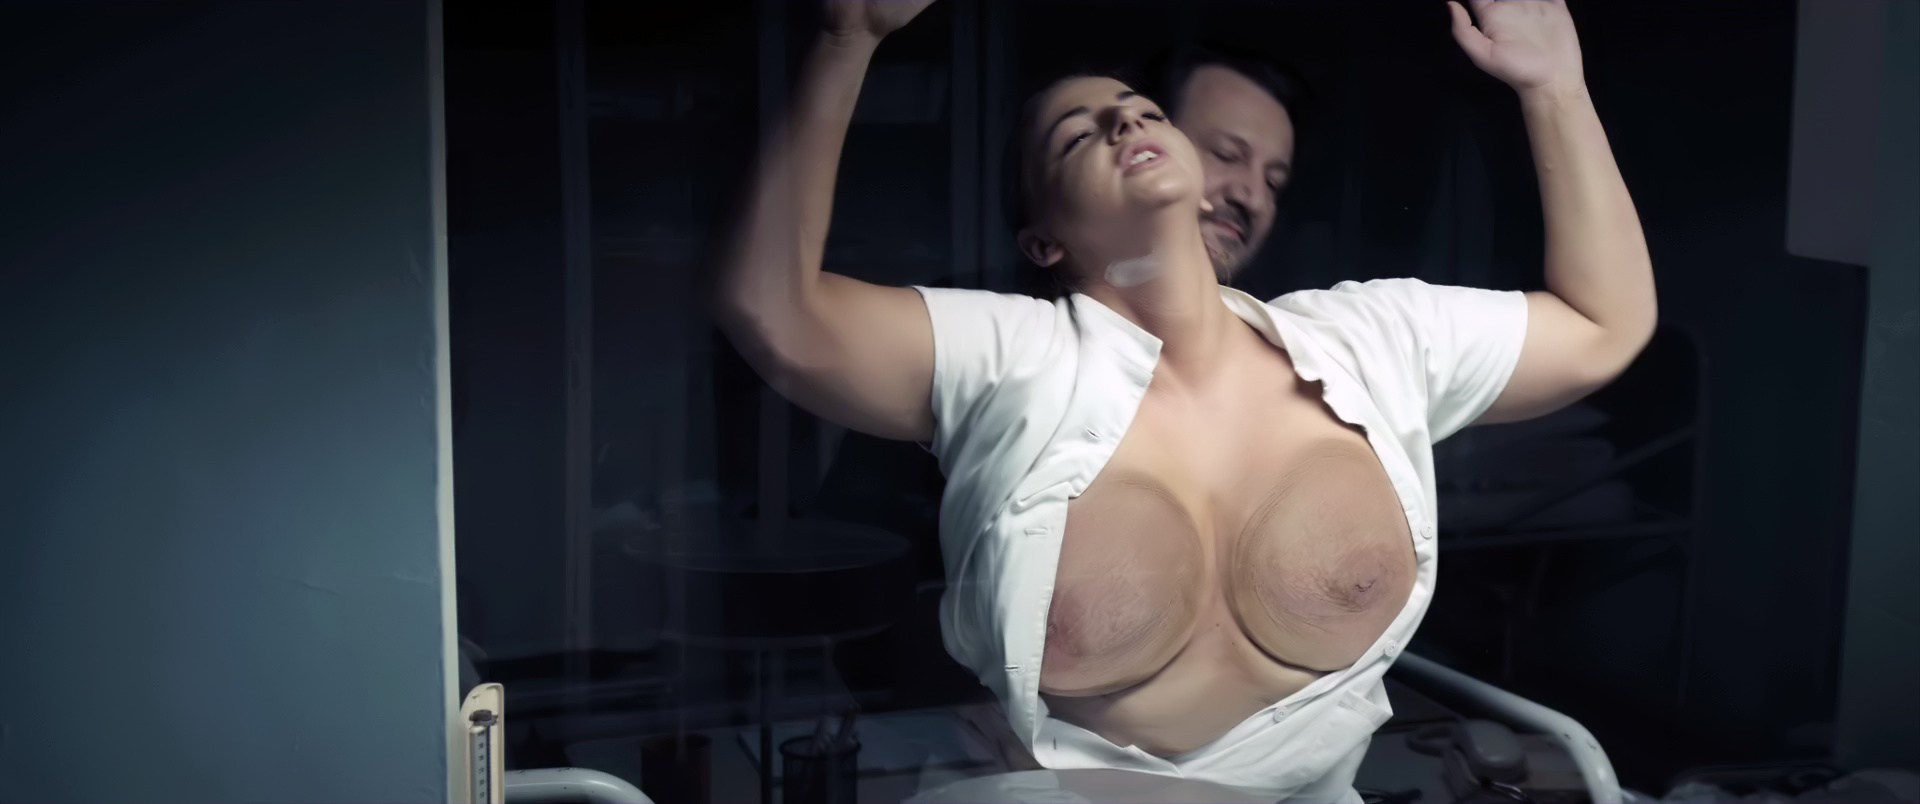 итальянские порно фильмы с большой грудью фото 58